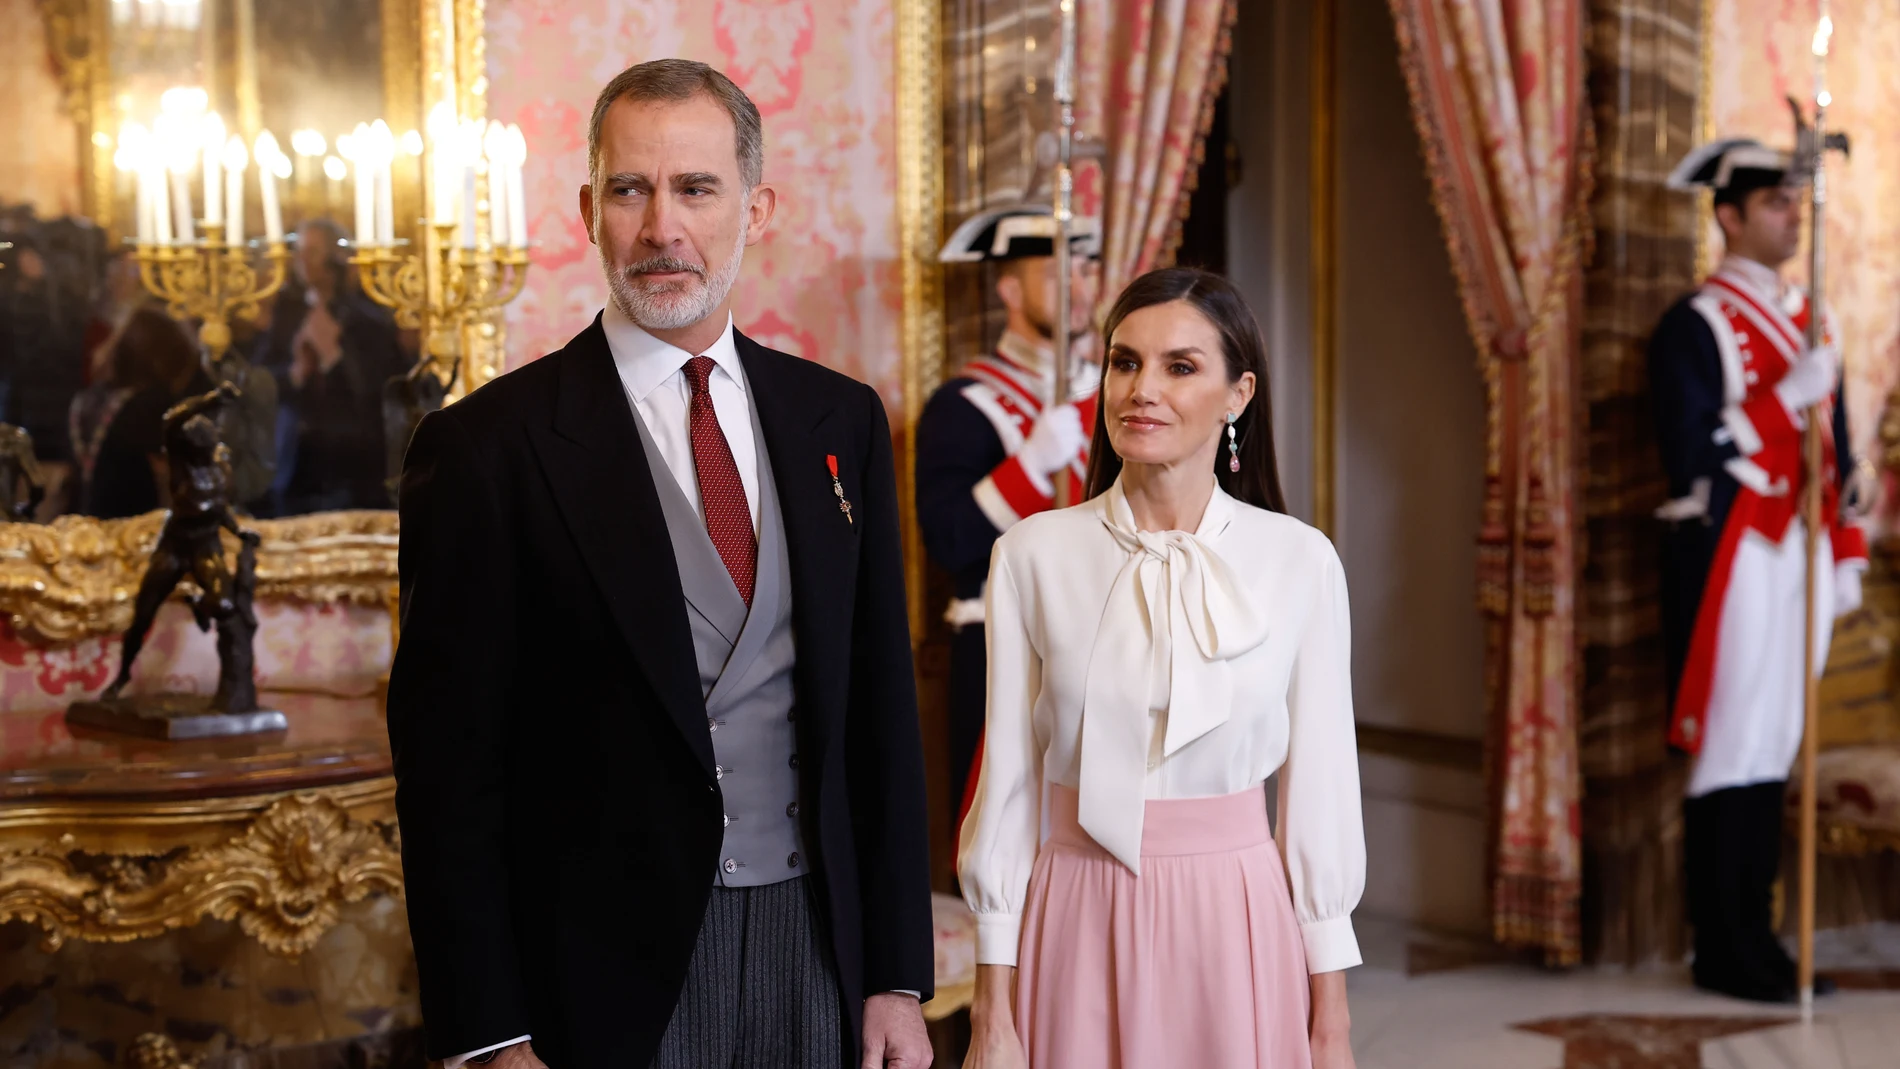 Los Reyes Felipe VI y la Reina Letizia